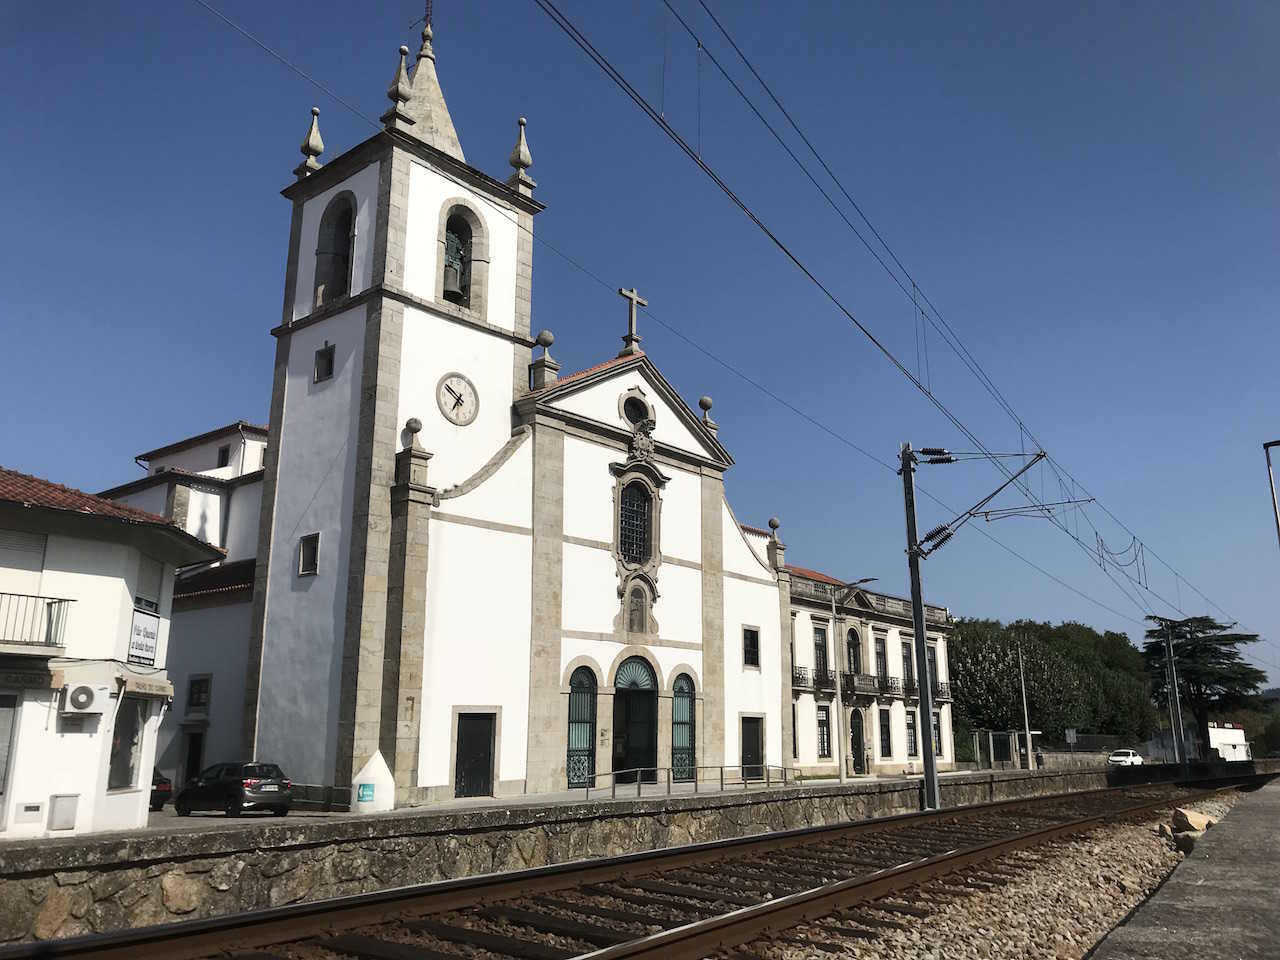 Katolske kirker - Caminoen